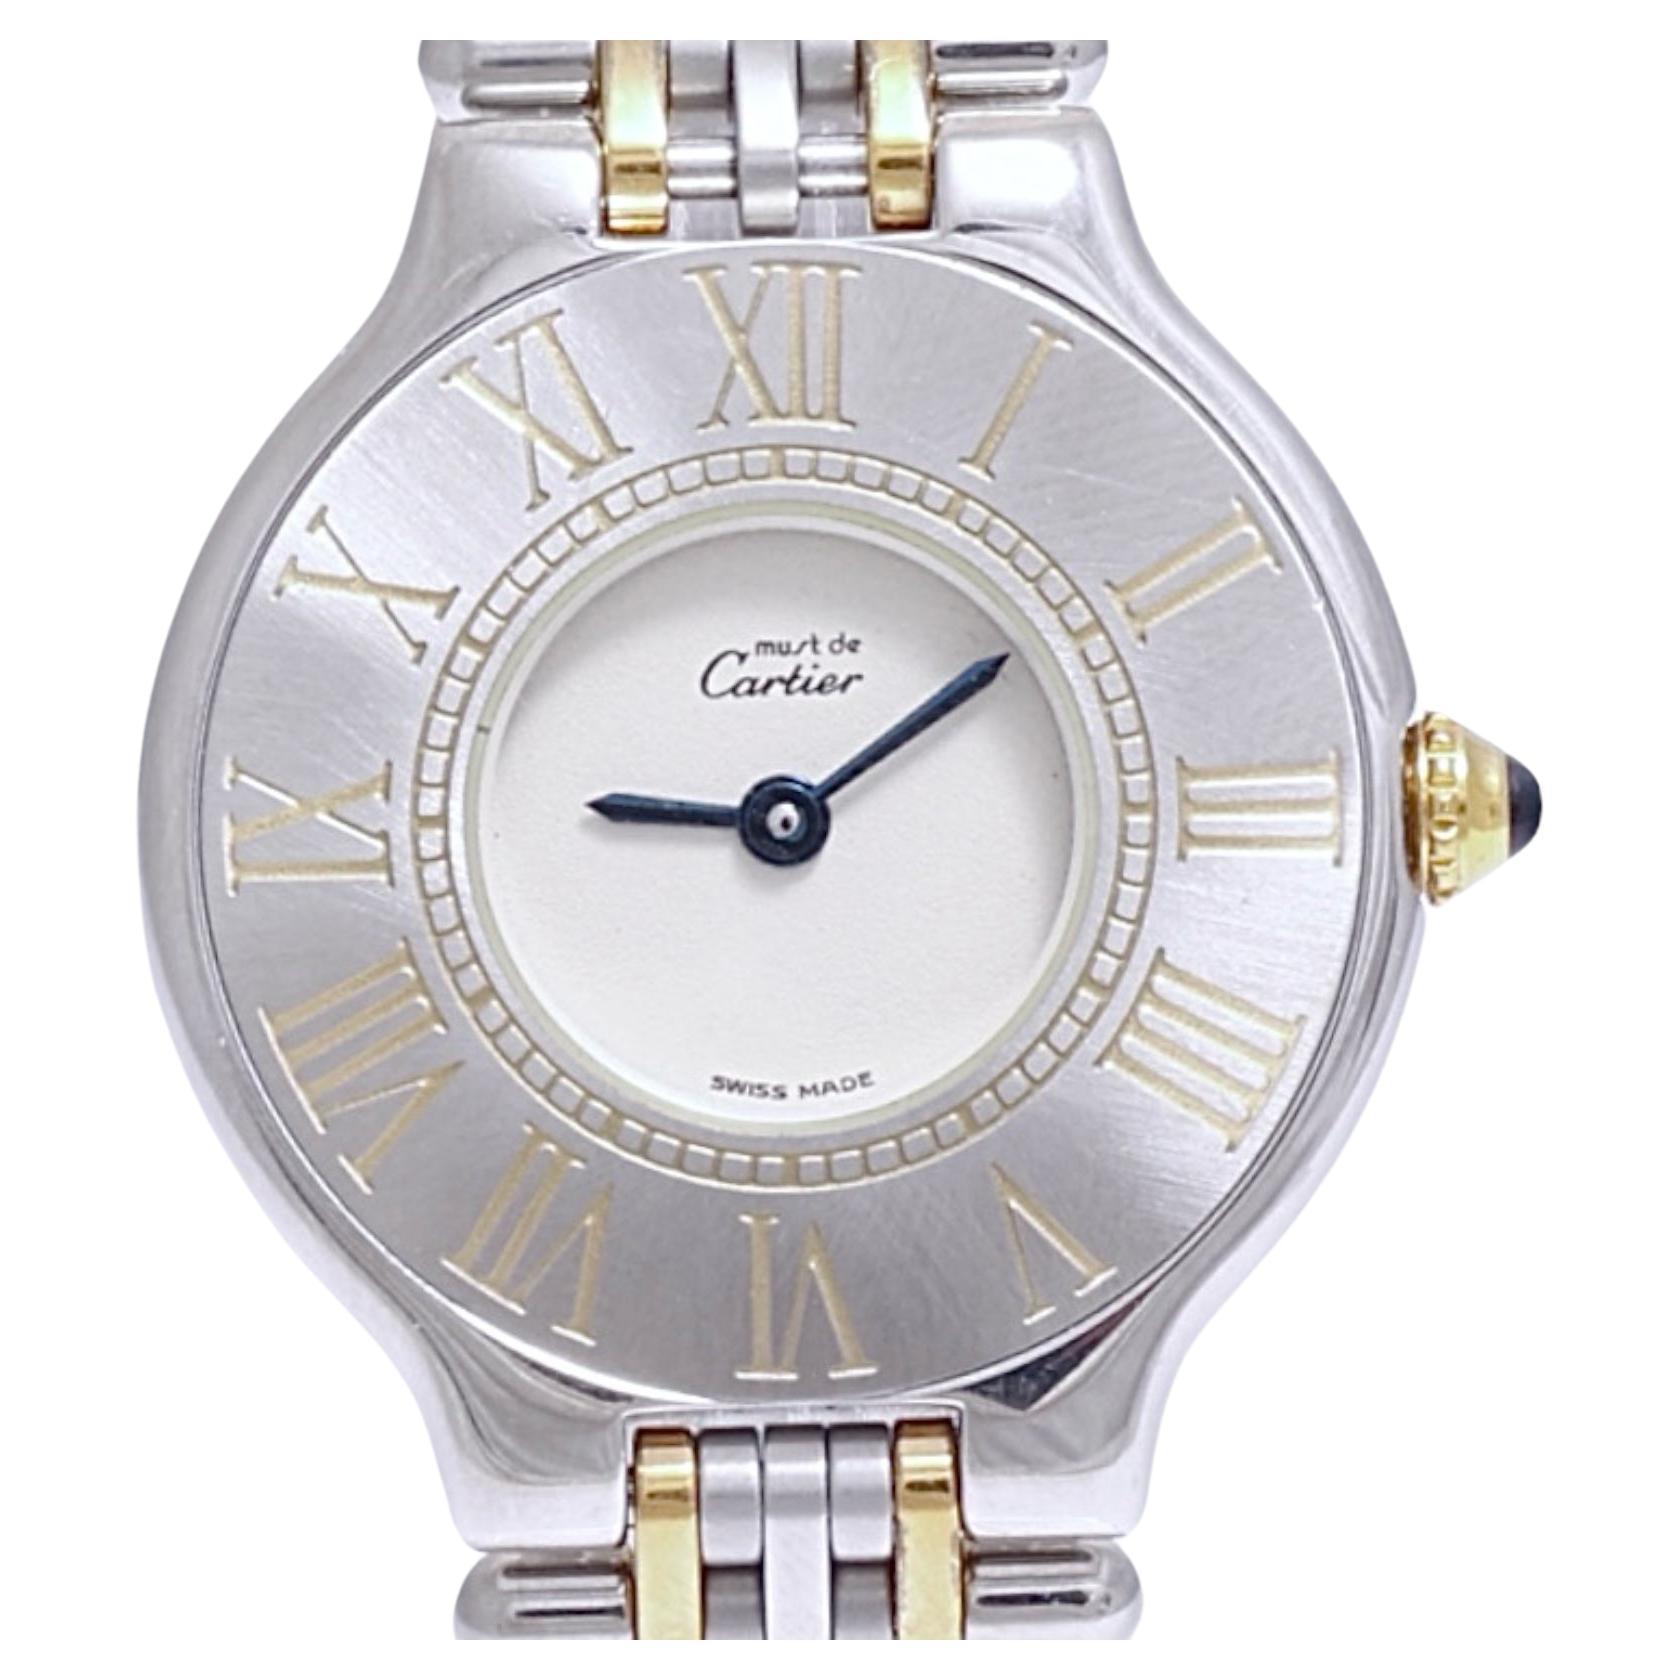 21 Must de Cartier Quartz 28 mm Wristwatch